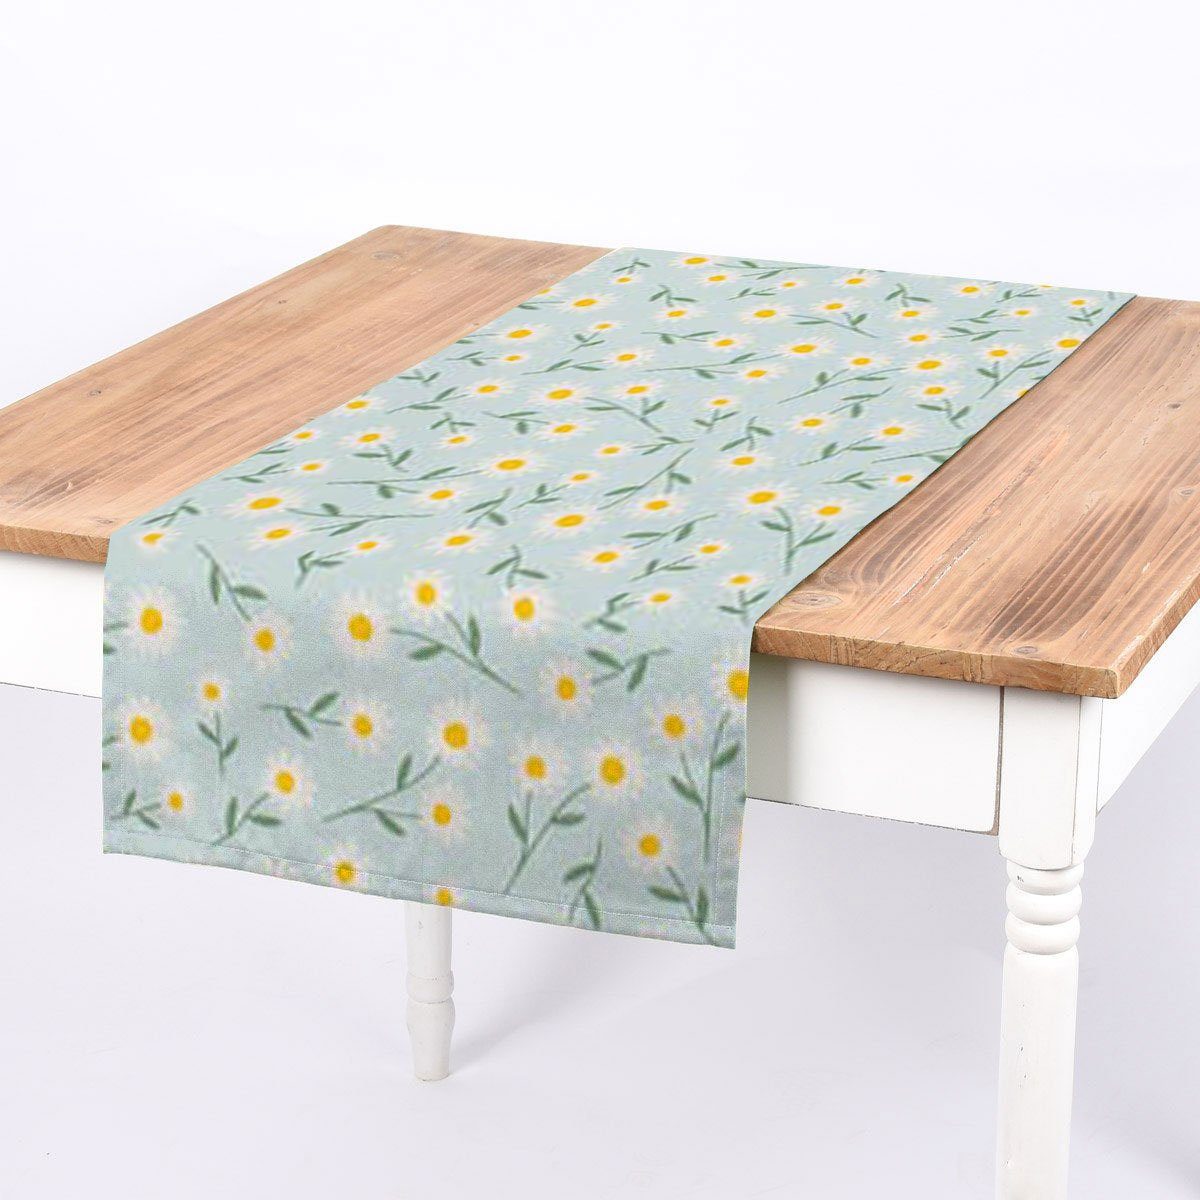 SCHÖNER LEBEN. Tischläufer SCHÖNER oder hellblauer handmade Tischläufer LEBEN. Gänseblümchen weiß-gelb-grünen hellblau natur mit Gänseblümchen Hintergrund weiß